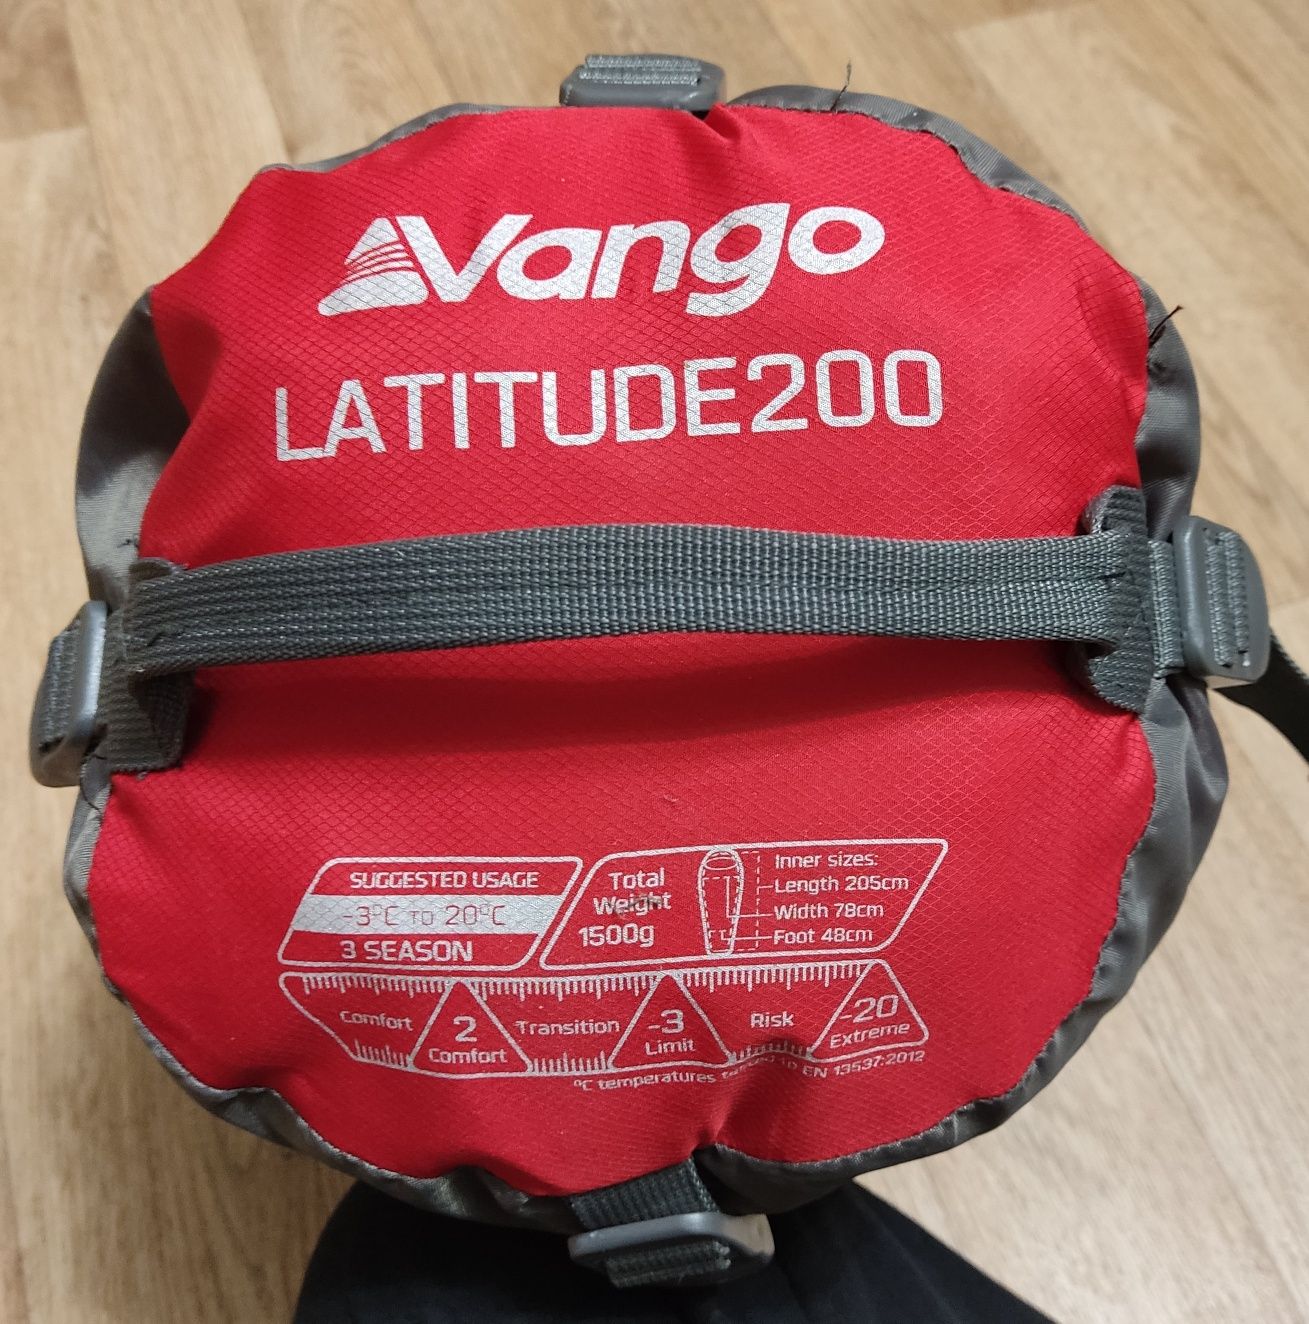 Спальный мешок Vango Latitude 200

LATITUDE200Vango

LATITUDE2